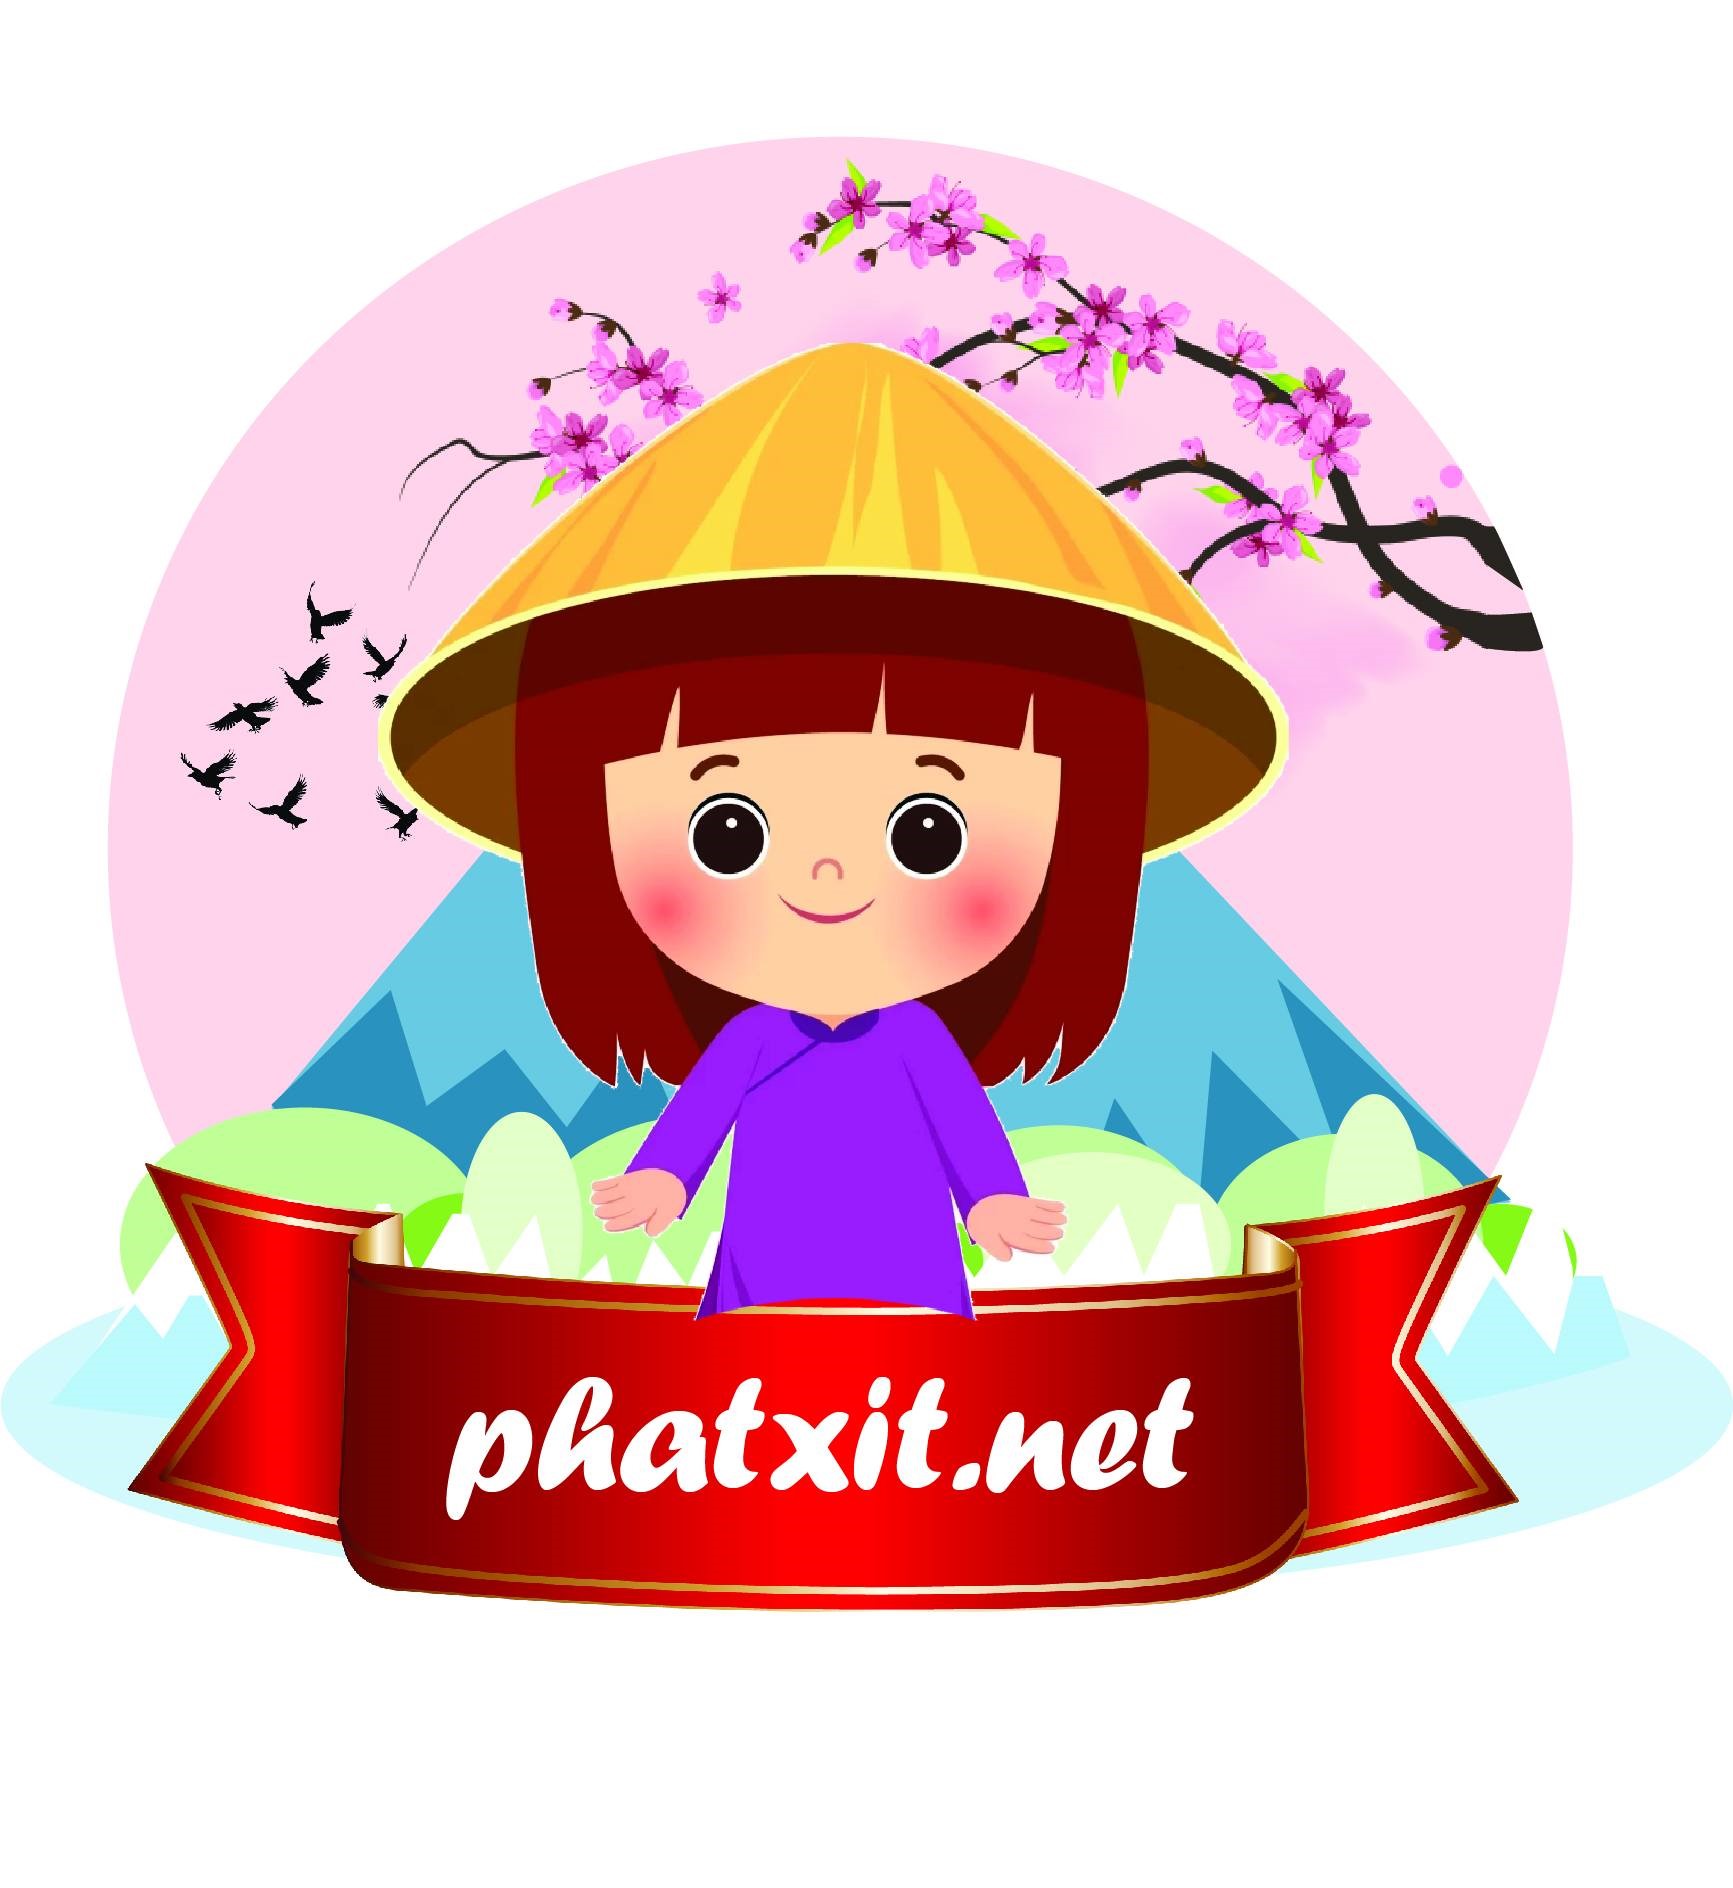 phatxit.net